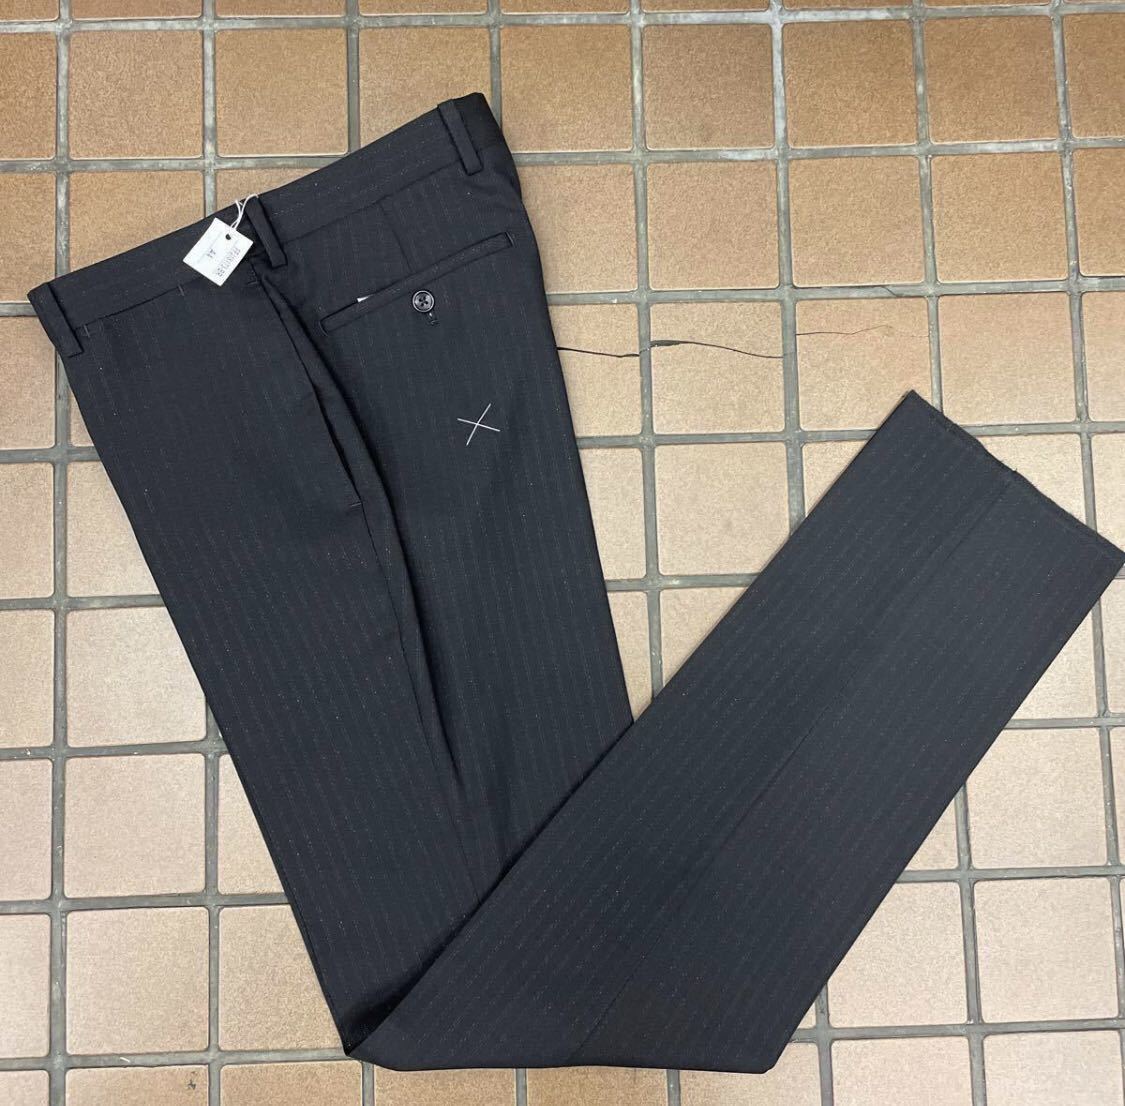  outlet price new goods / super-discount suit * men's suit 2. button suit / black black group / size M A5/ center Benz no- tuck * lustre stripe 